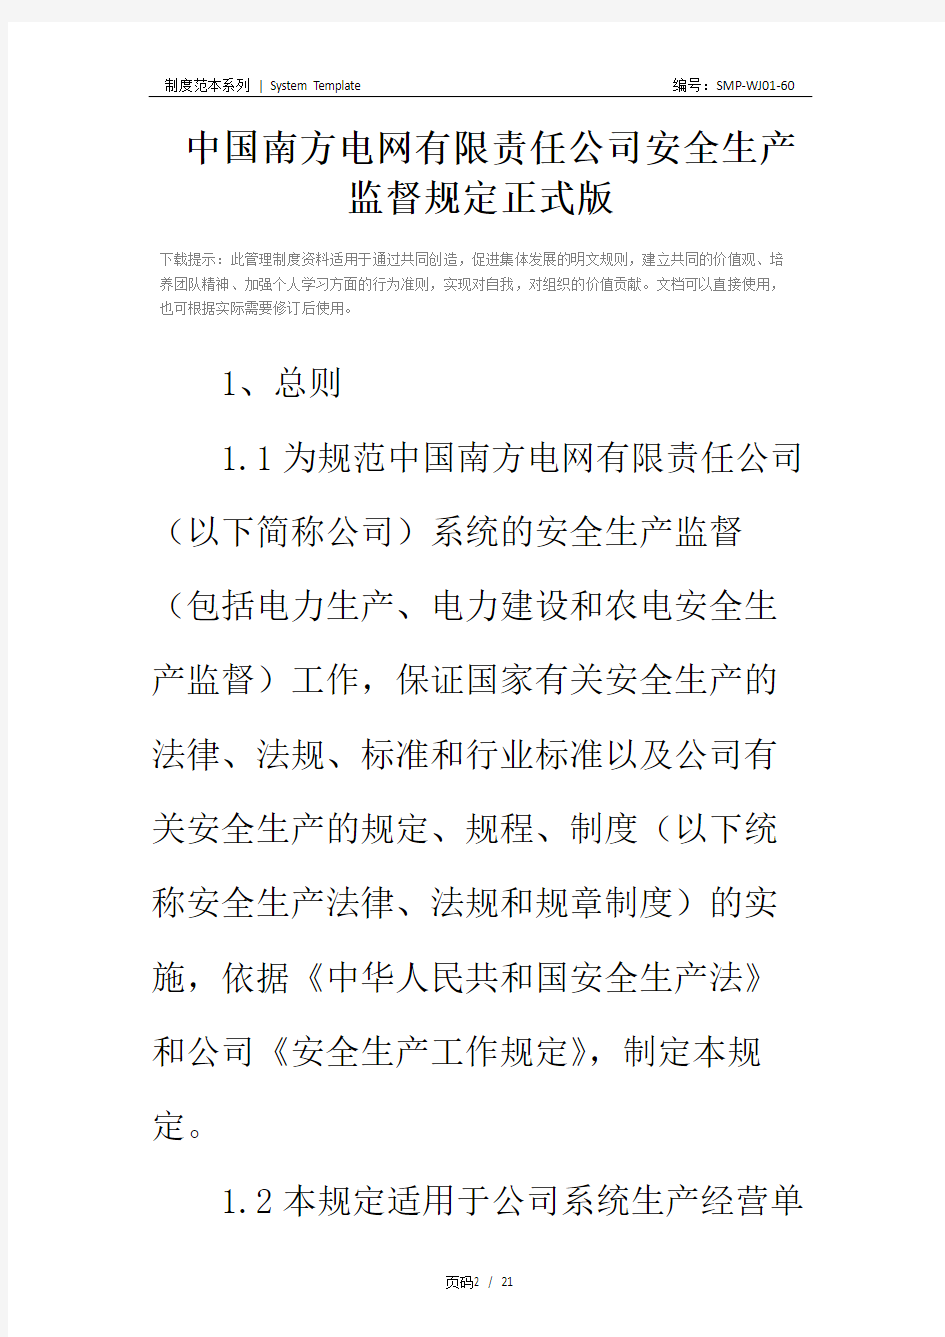 中国南方电网有限责任公司安全生产监督规定正式版